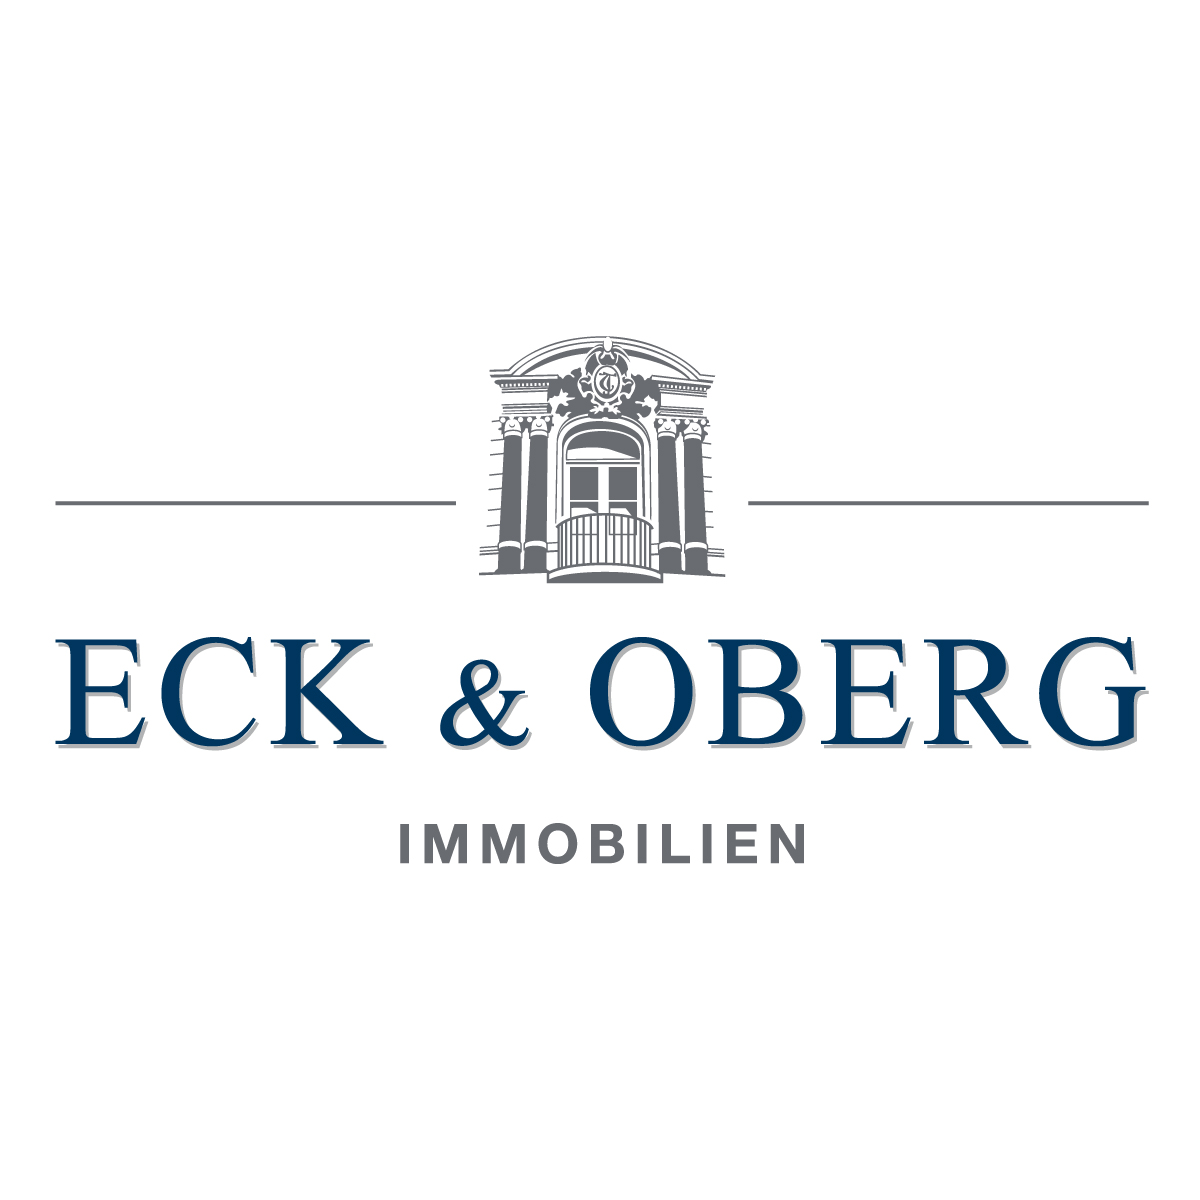 Bild 1 ECK & OBERG GmbH & Co. KG in Kiel